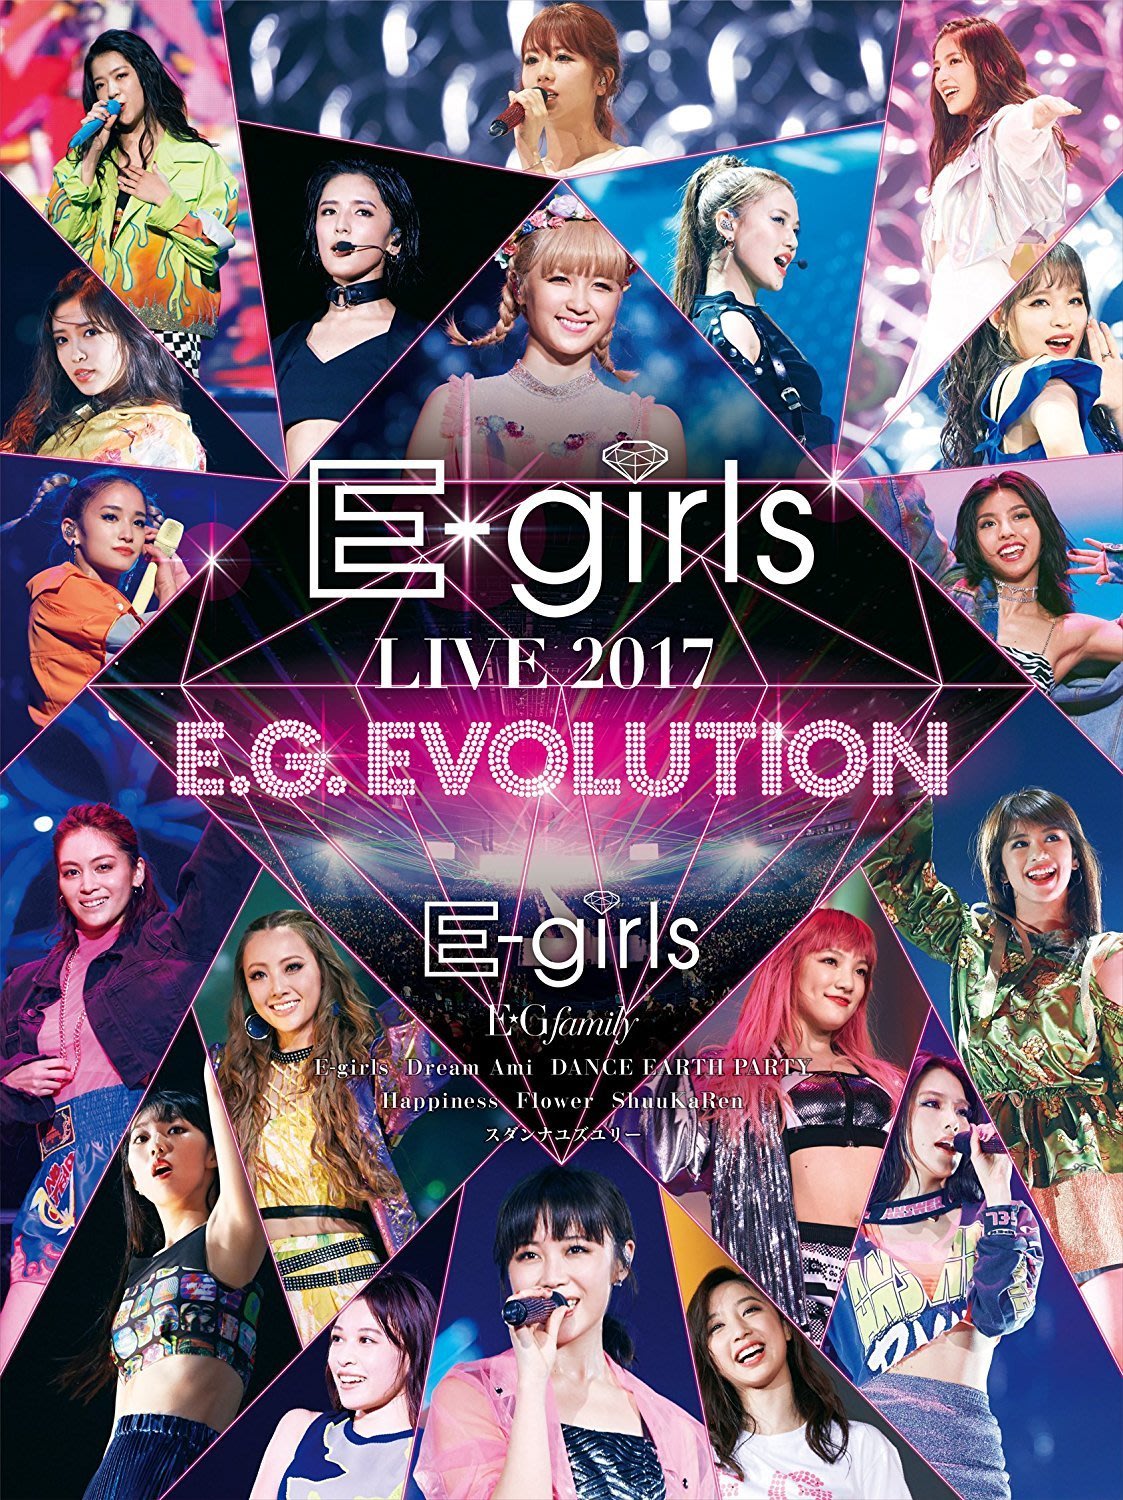 特價預購e Girls Live 17 E G Evolution 日版bd藍光 最新航空版 Yahoo奇摩拍賣